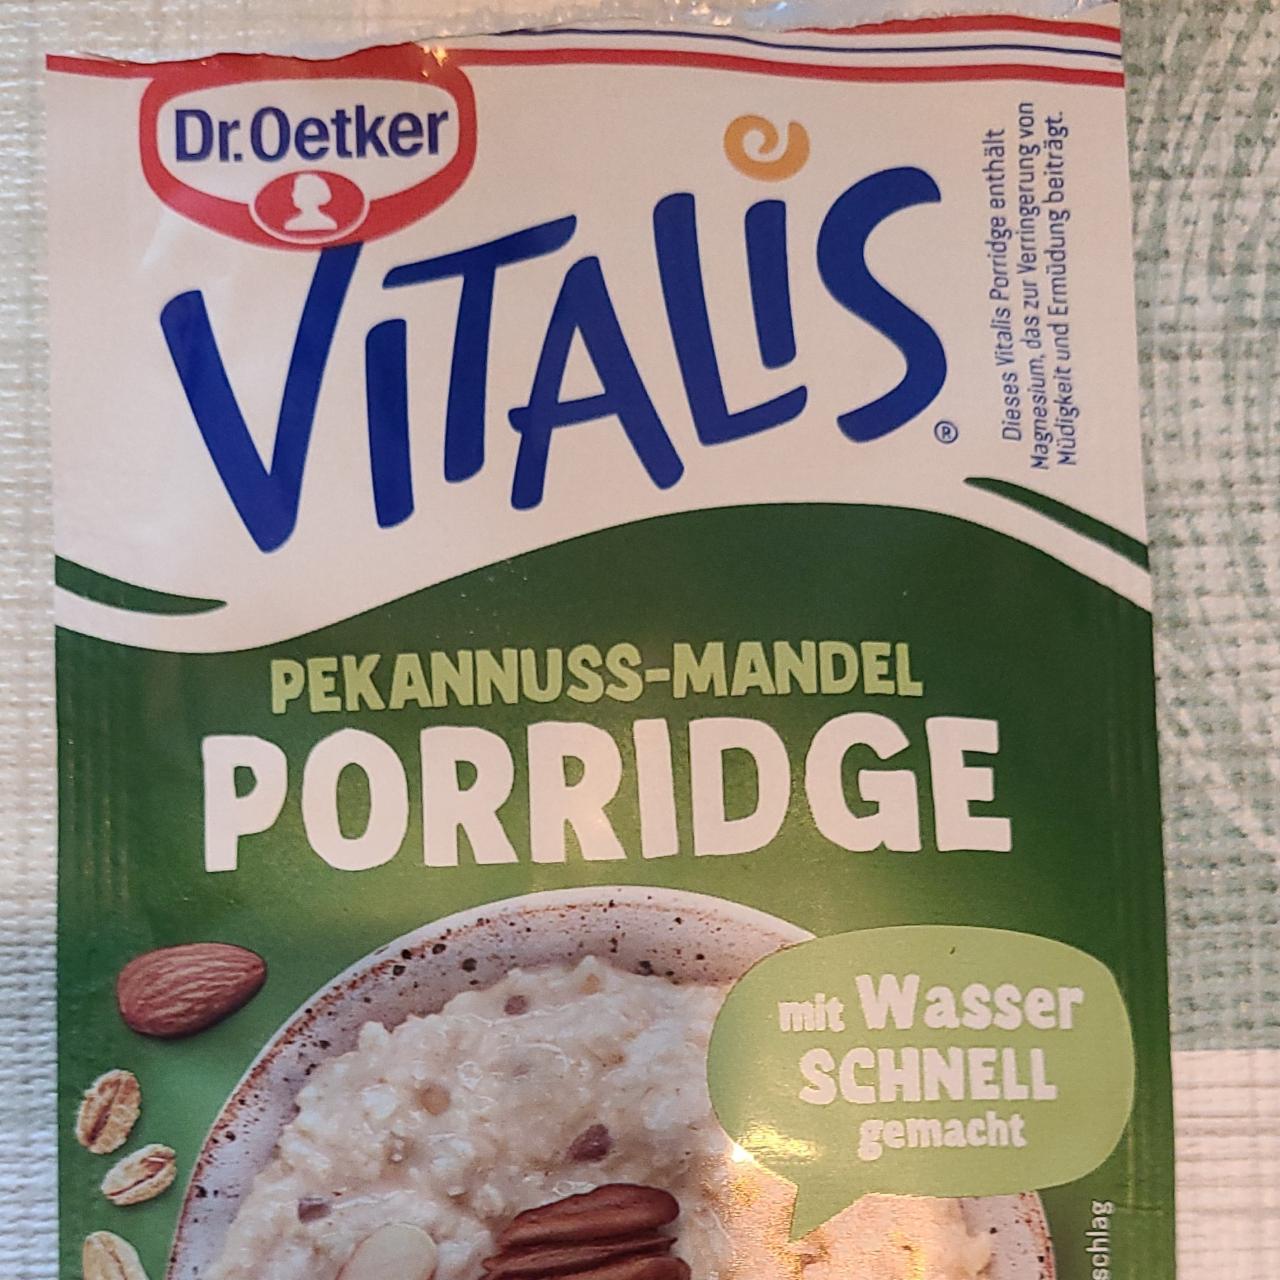 Fotografie - vitalis Porridge Pekannus-Mandeln Dr.Oetker